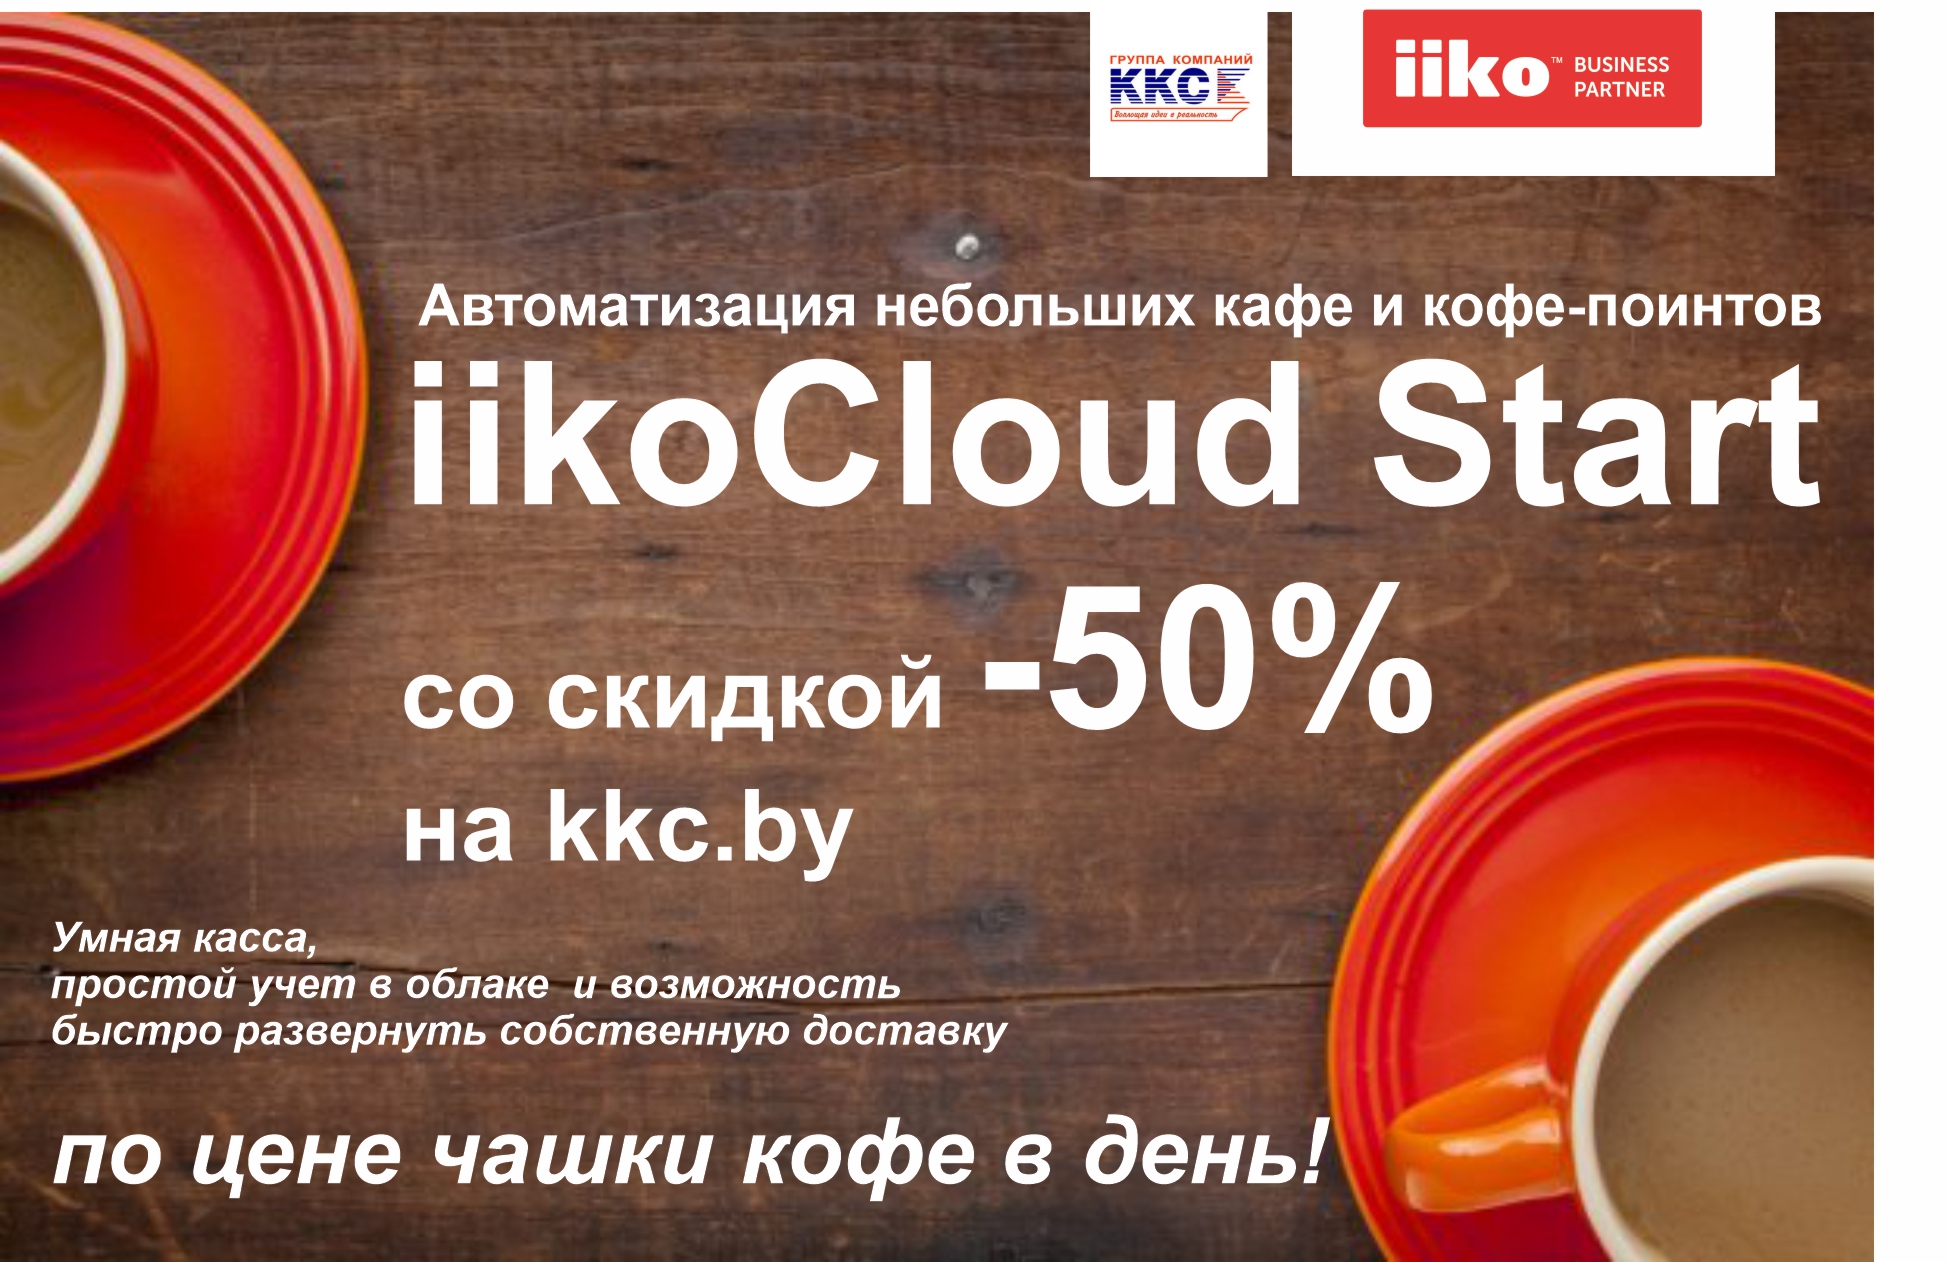 iikoStart со скидкой -50% на год (от 82 руб/мес)